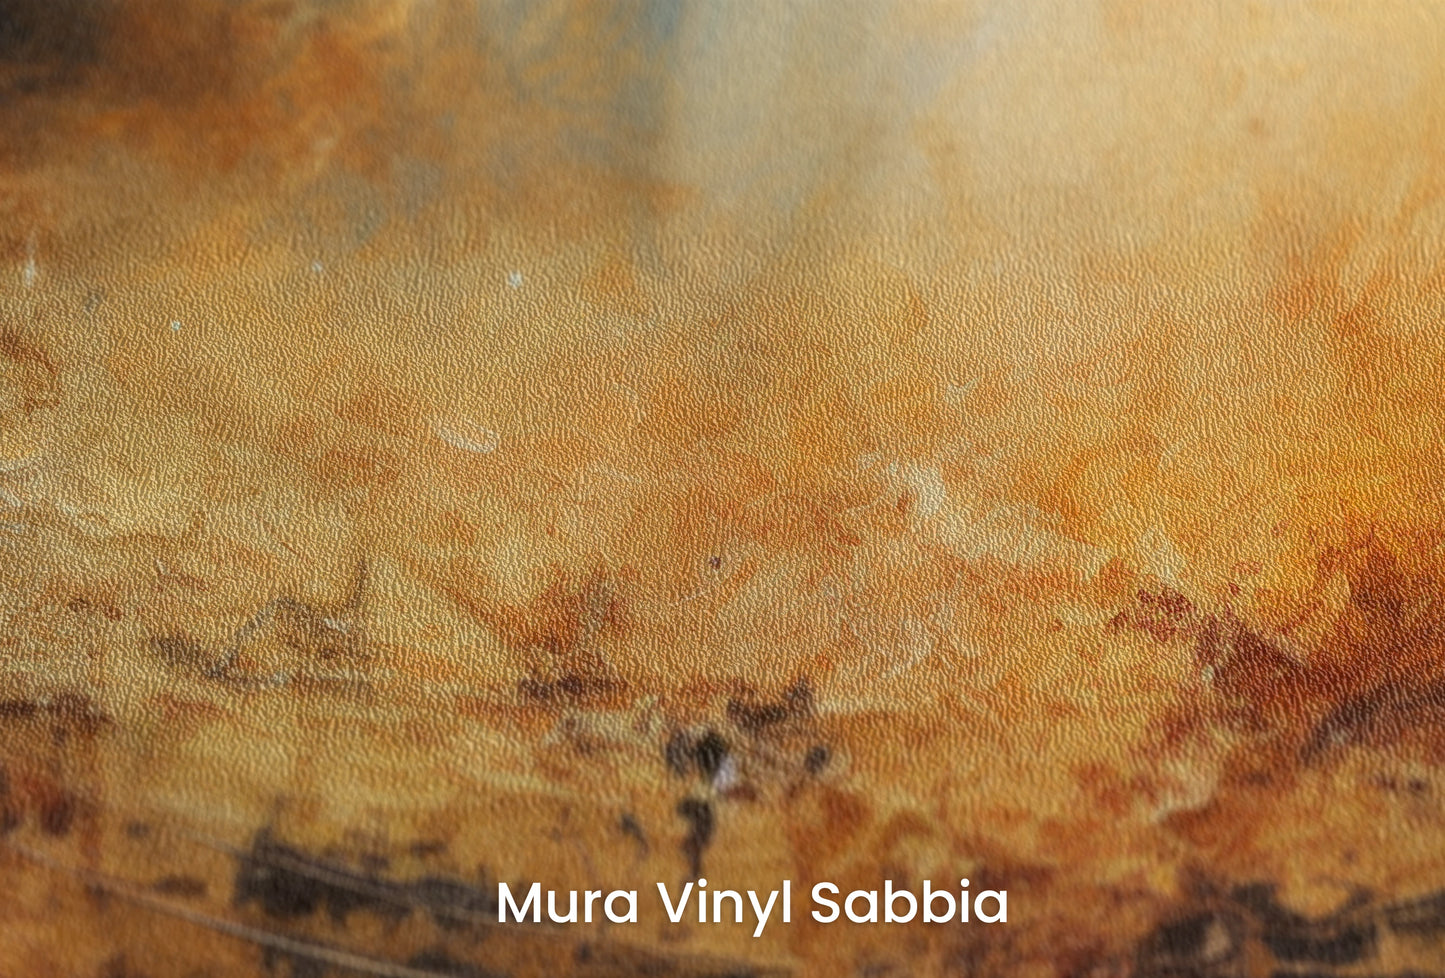 Zbliżenie na artystyczną fototapetę o nazwie Moonlit Glory na podłożu Mura Vinyl Sabbia struktura grubego ziarna piasku.